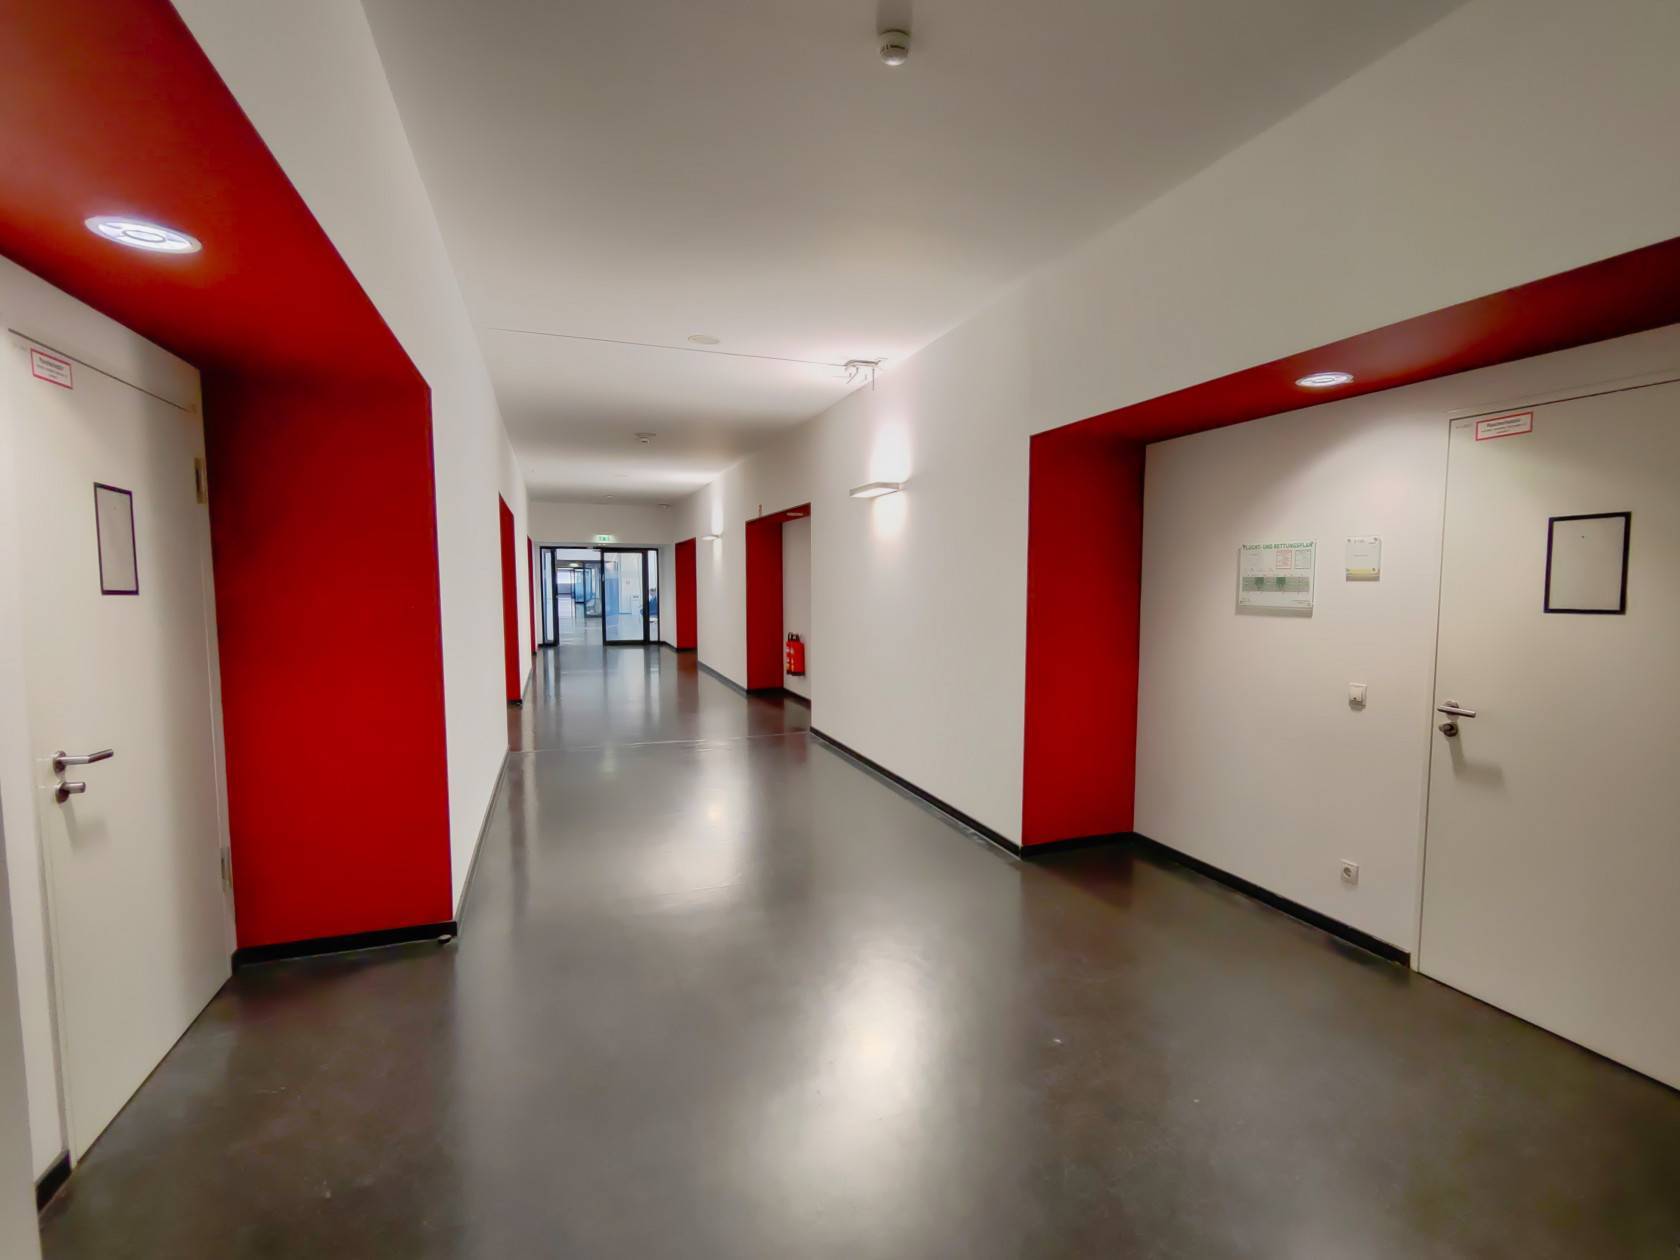 Flur, links und rechts rote/weiße Wände, Türen zu den Seminarräumen